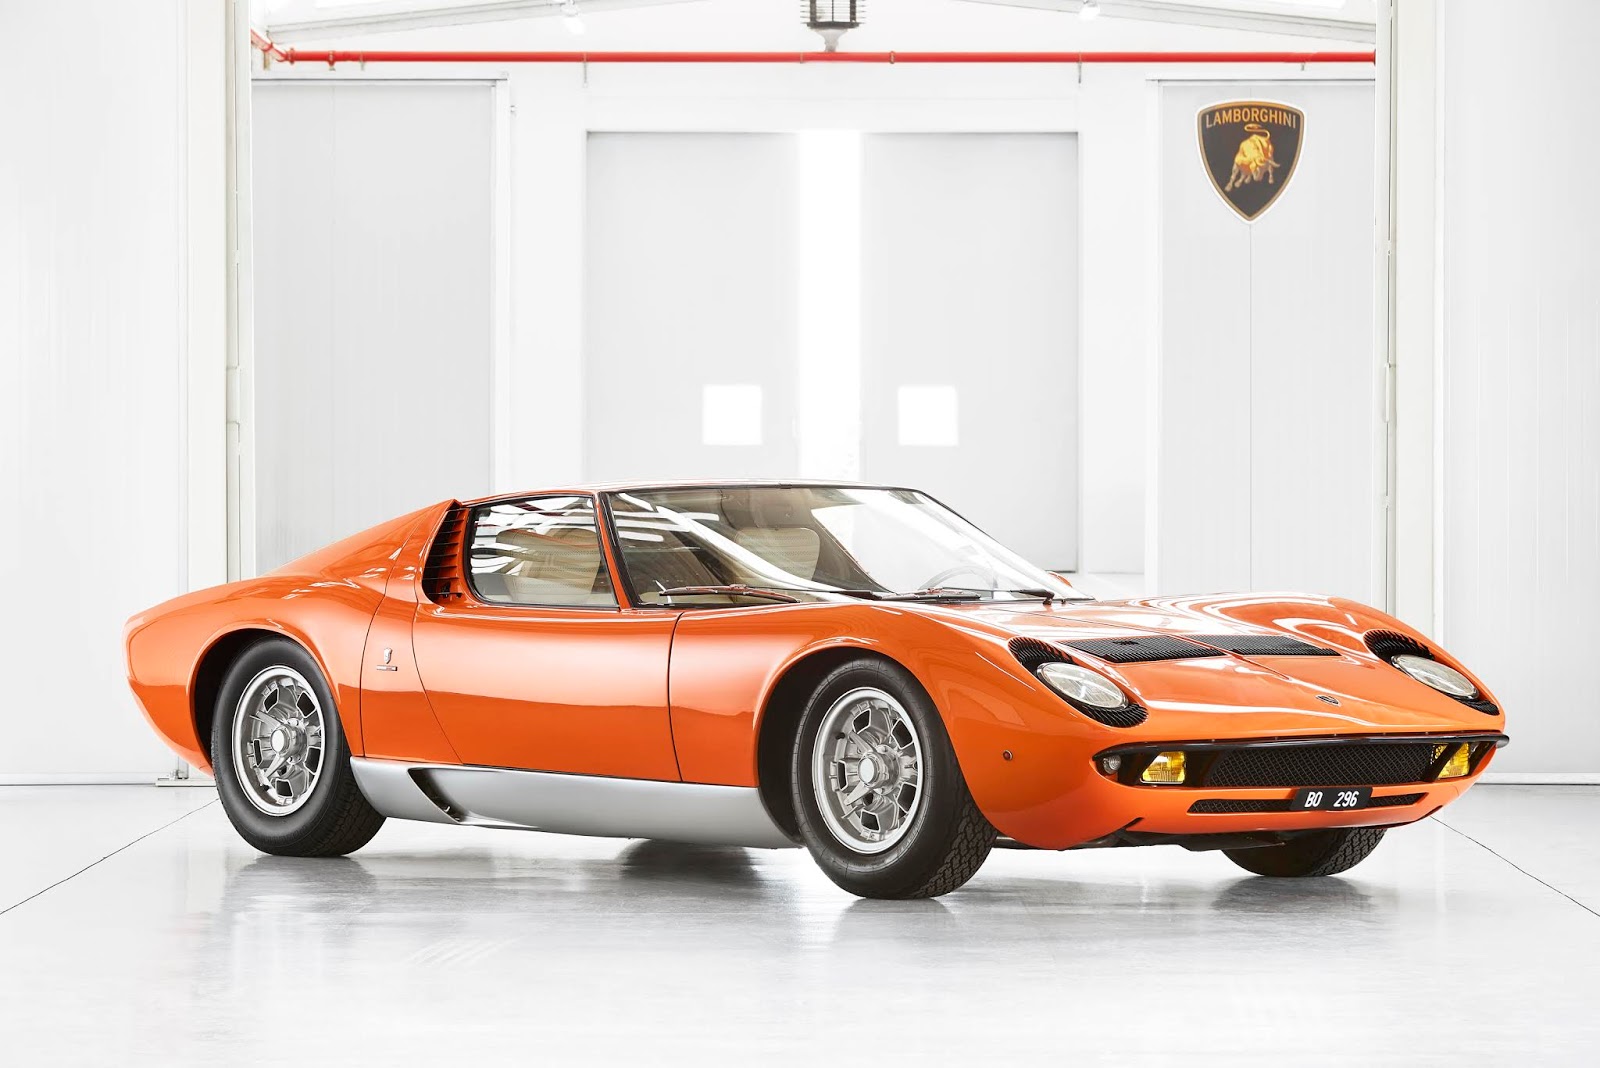 537535 Lamborghini Miura. Η γέννηση του supercar.